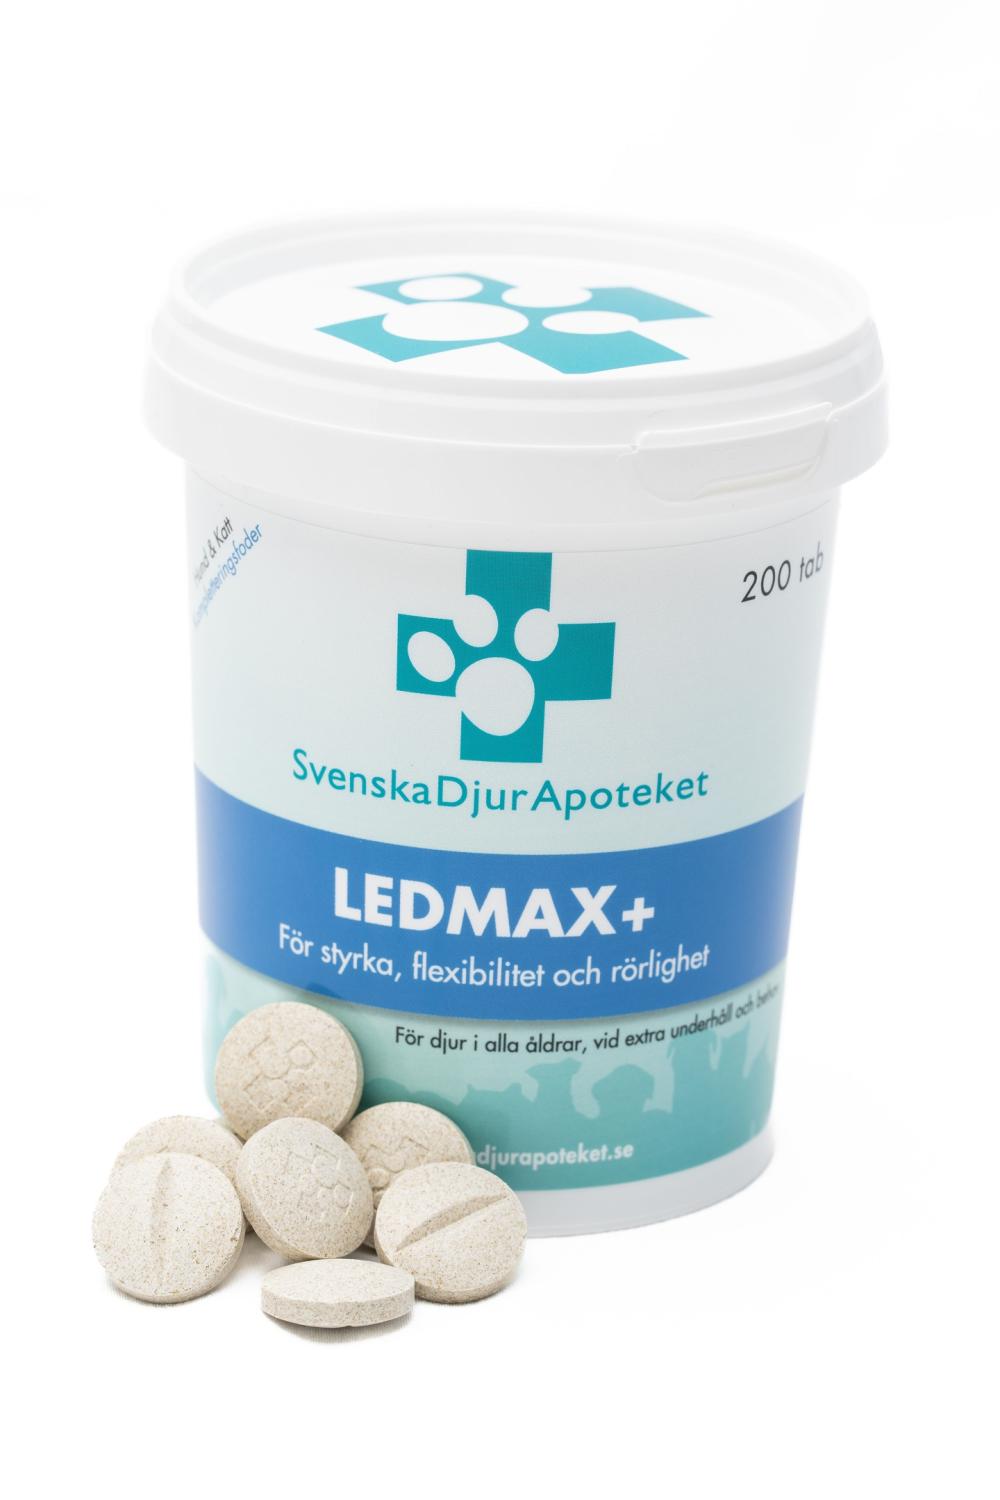 Svenska DjurApotekets LedMax+ är ett ledtillskott till djur med extra behov som vill bibehålla sin styrka, flexibilitet och rörlighet.